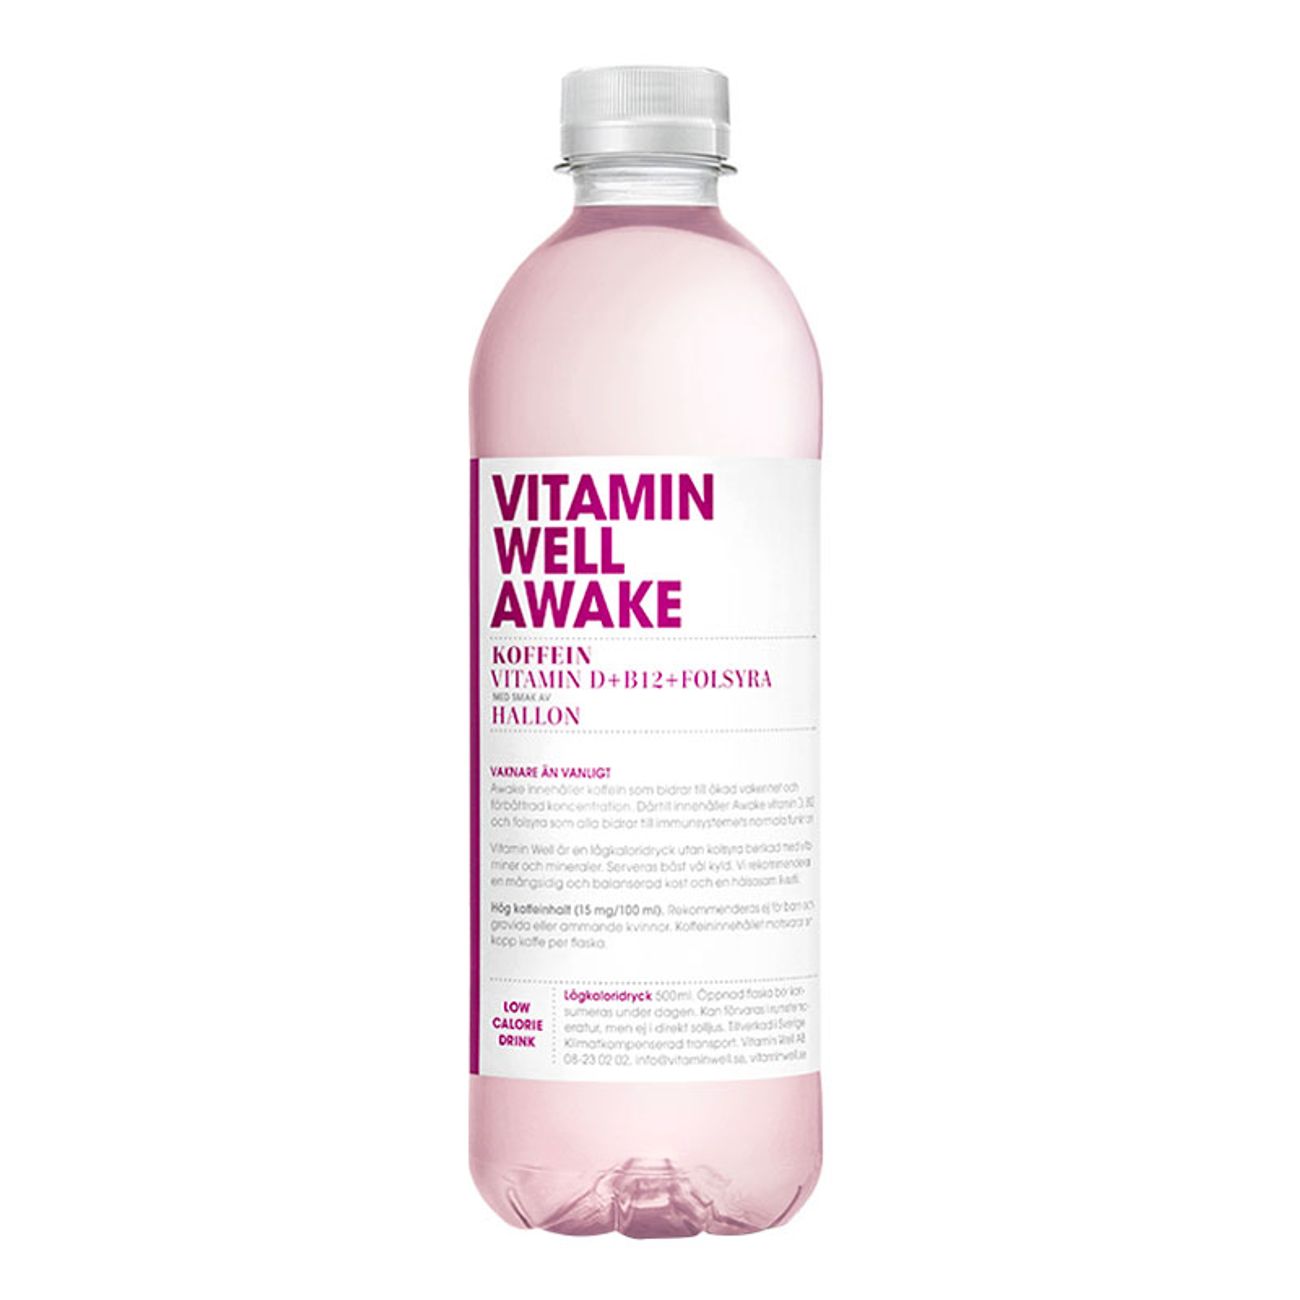 vitamin-well-awake-hallon-1